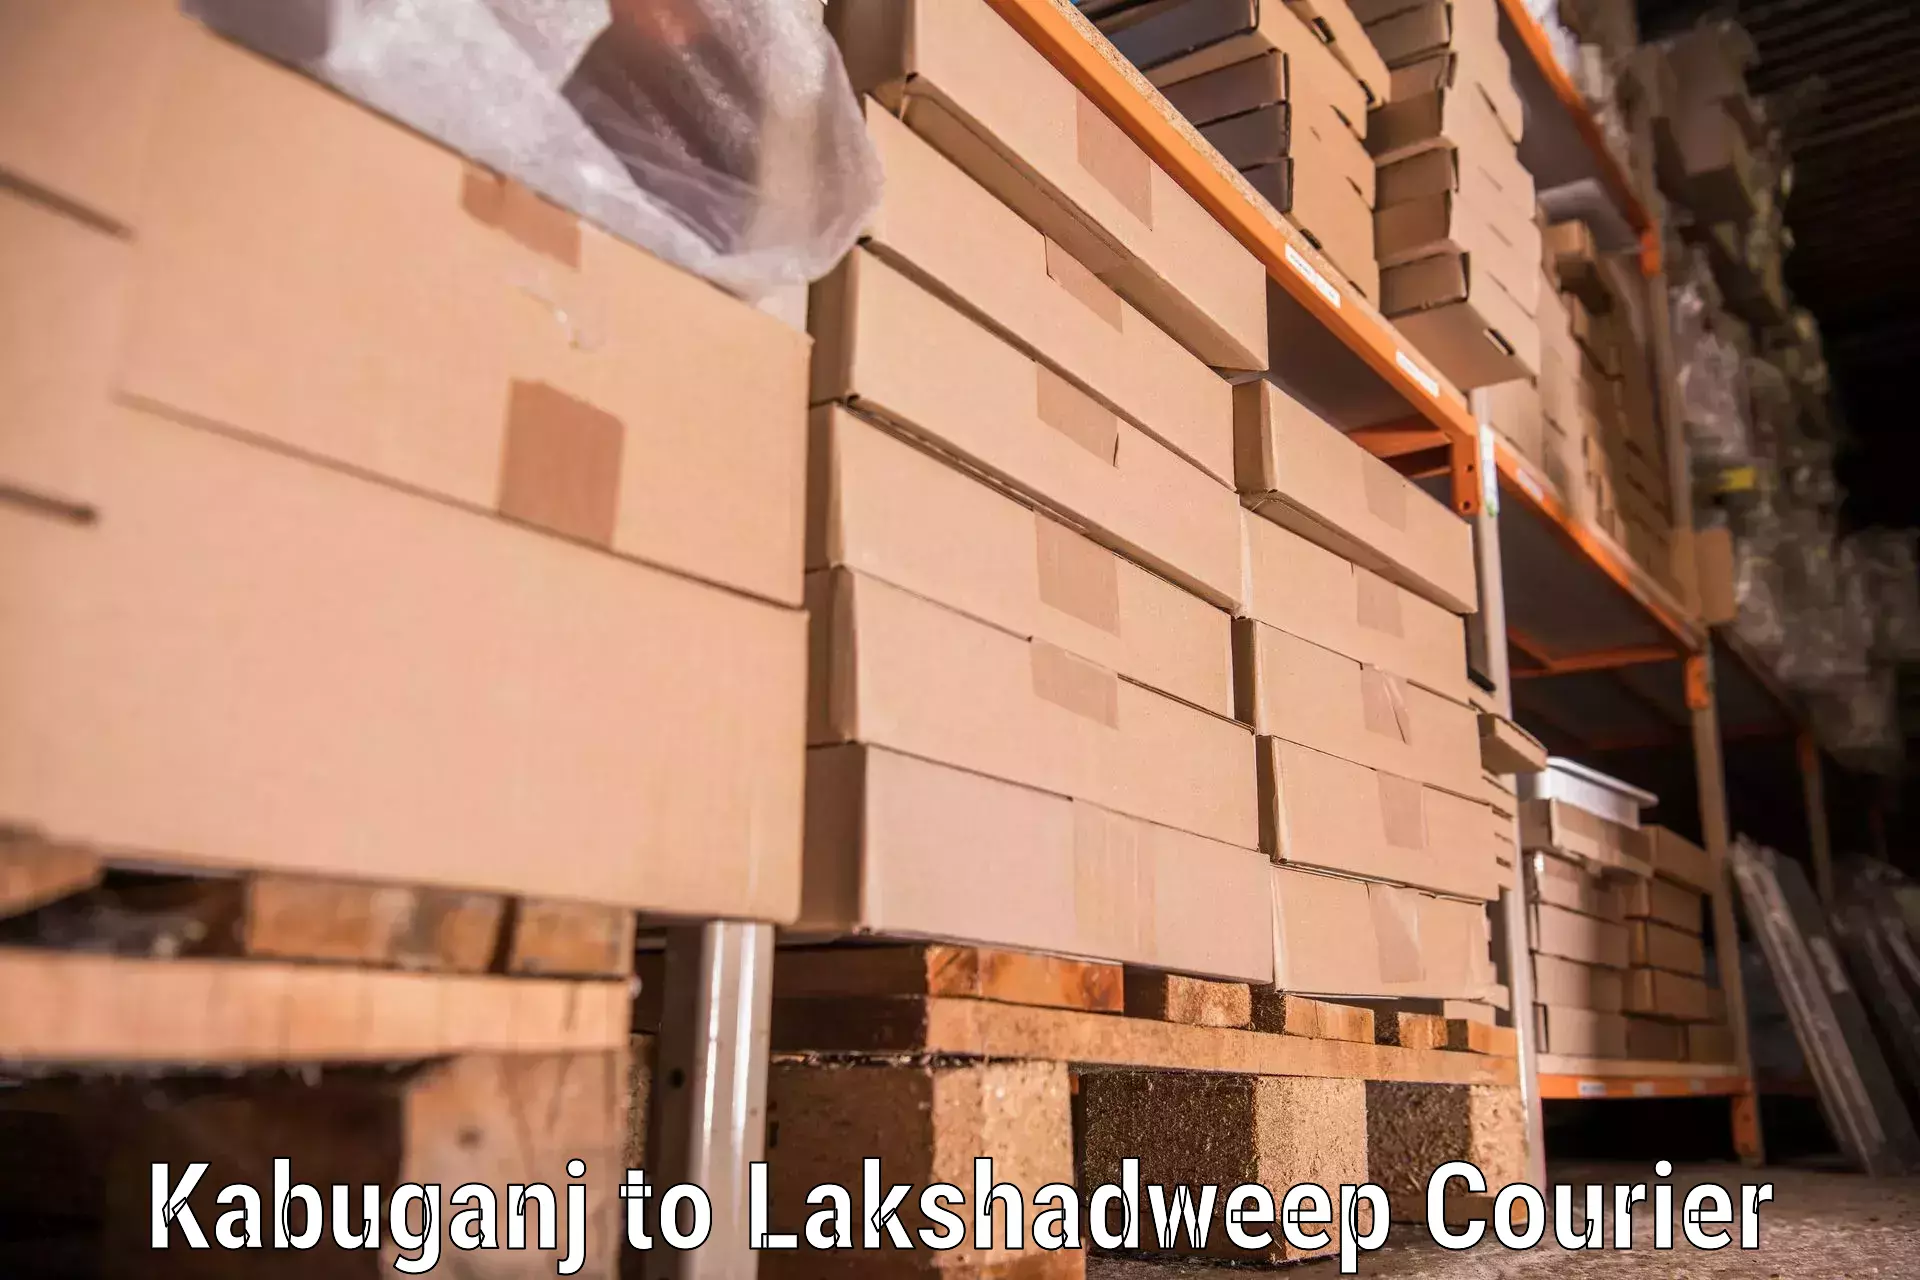 Professional moving company Kabuganj to Lakshadweep